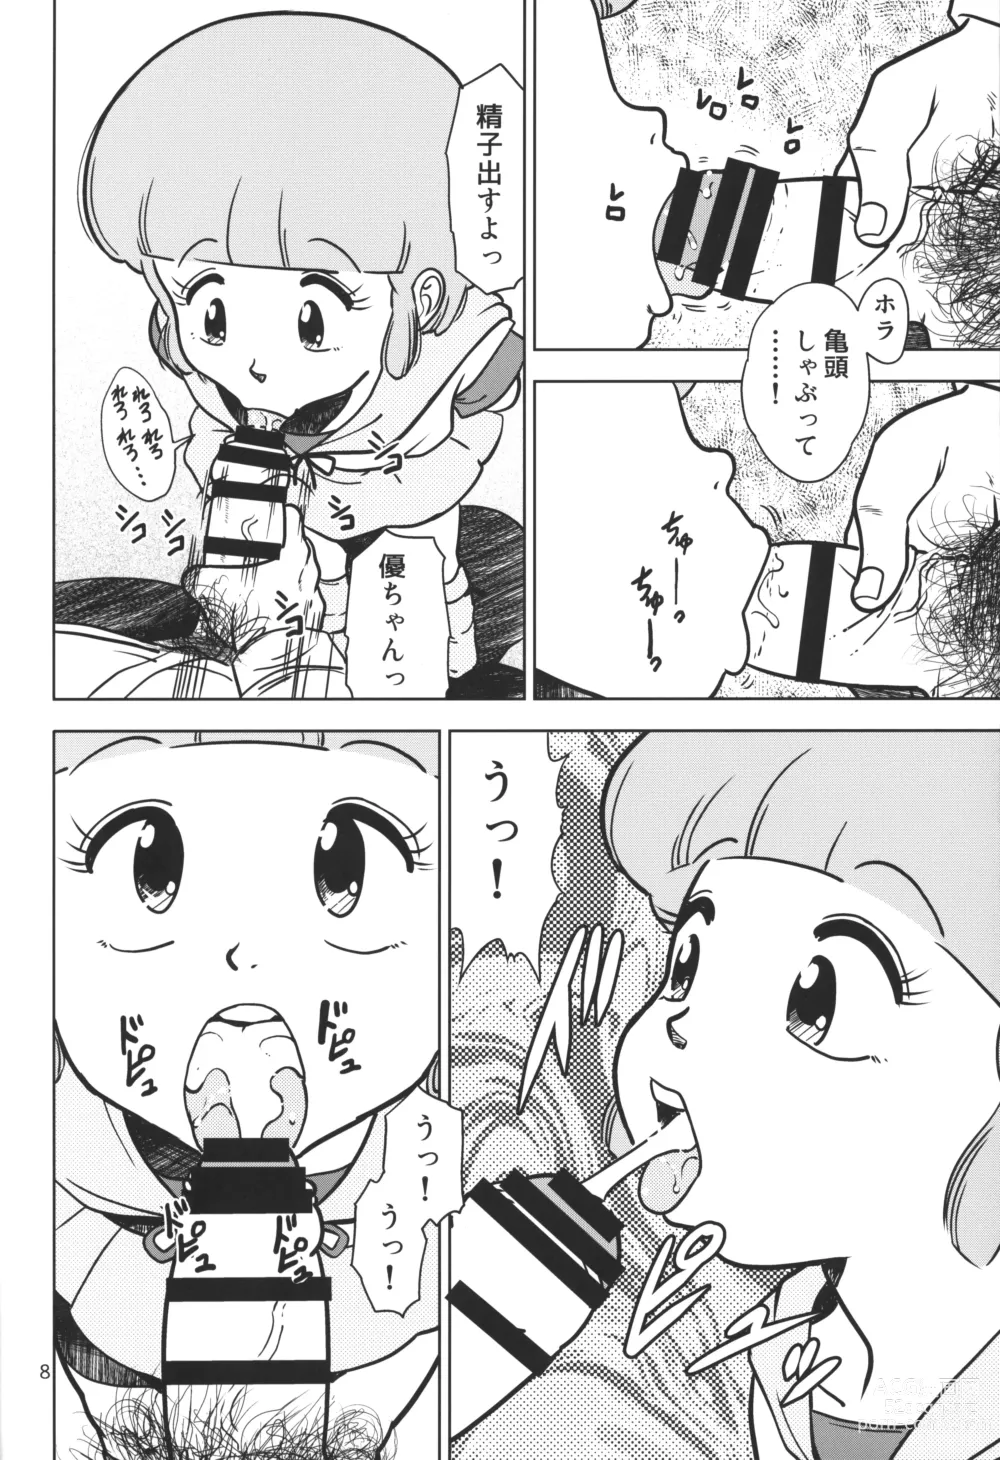 Page 7 of doujinshi Yuu no Papa Katsu